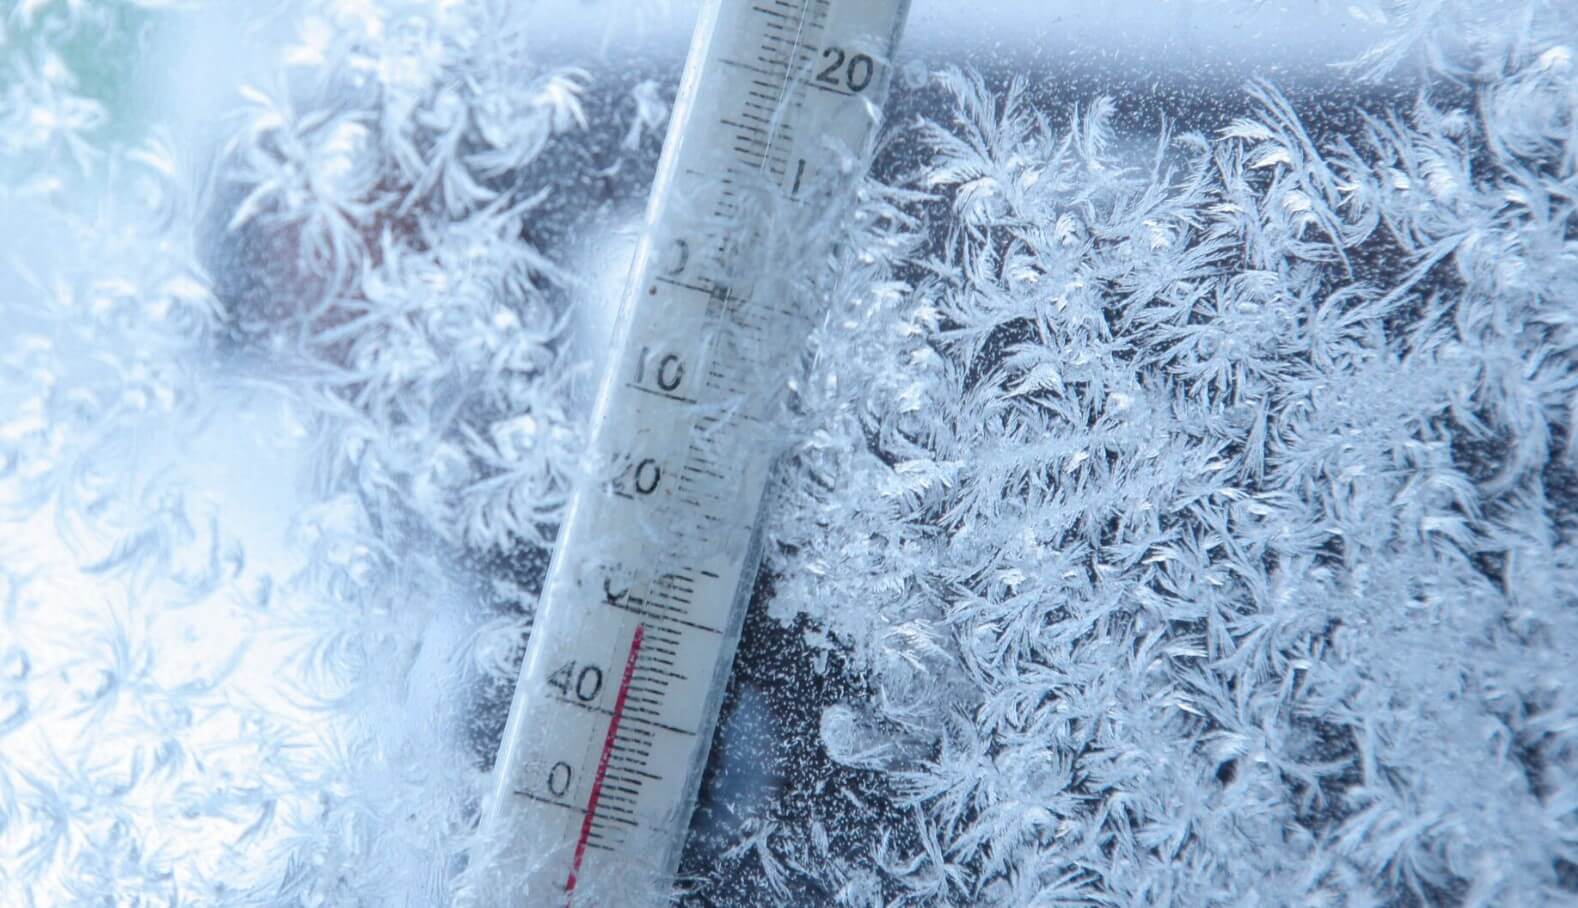 Температура воздуха при обморожении тела. Обычно обморожение происходит при температуре ниже -15 градусов. Фото.